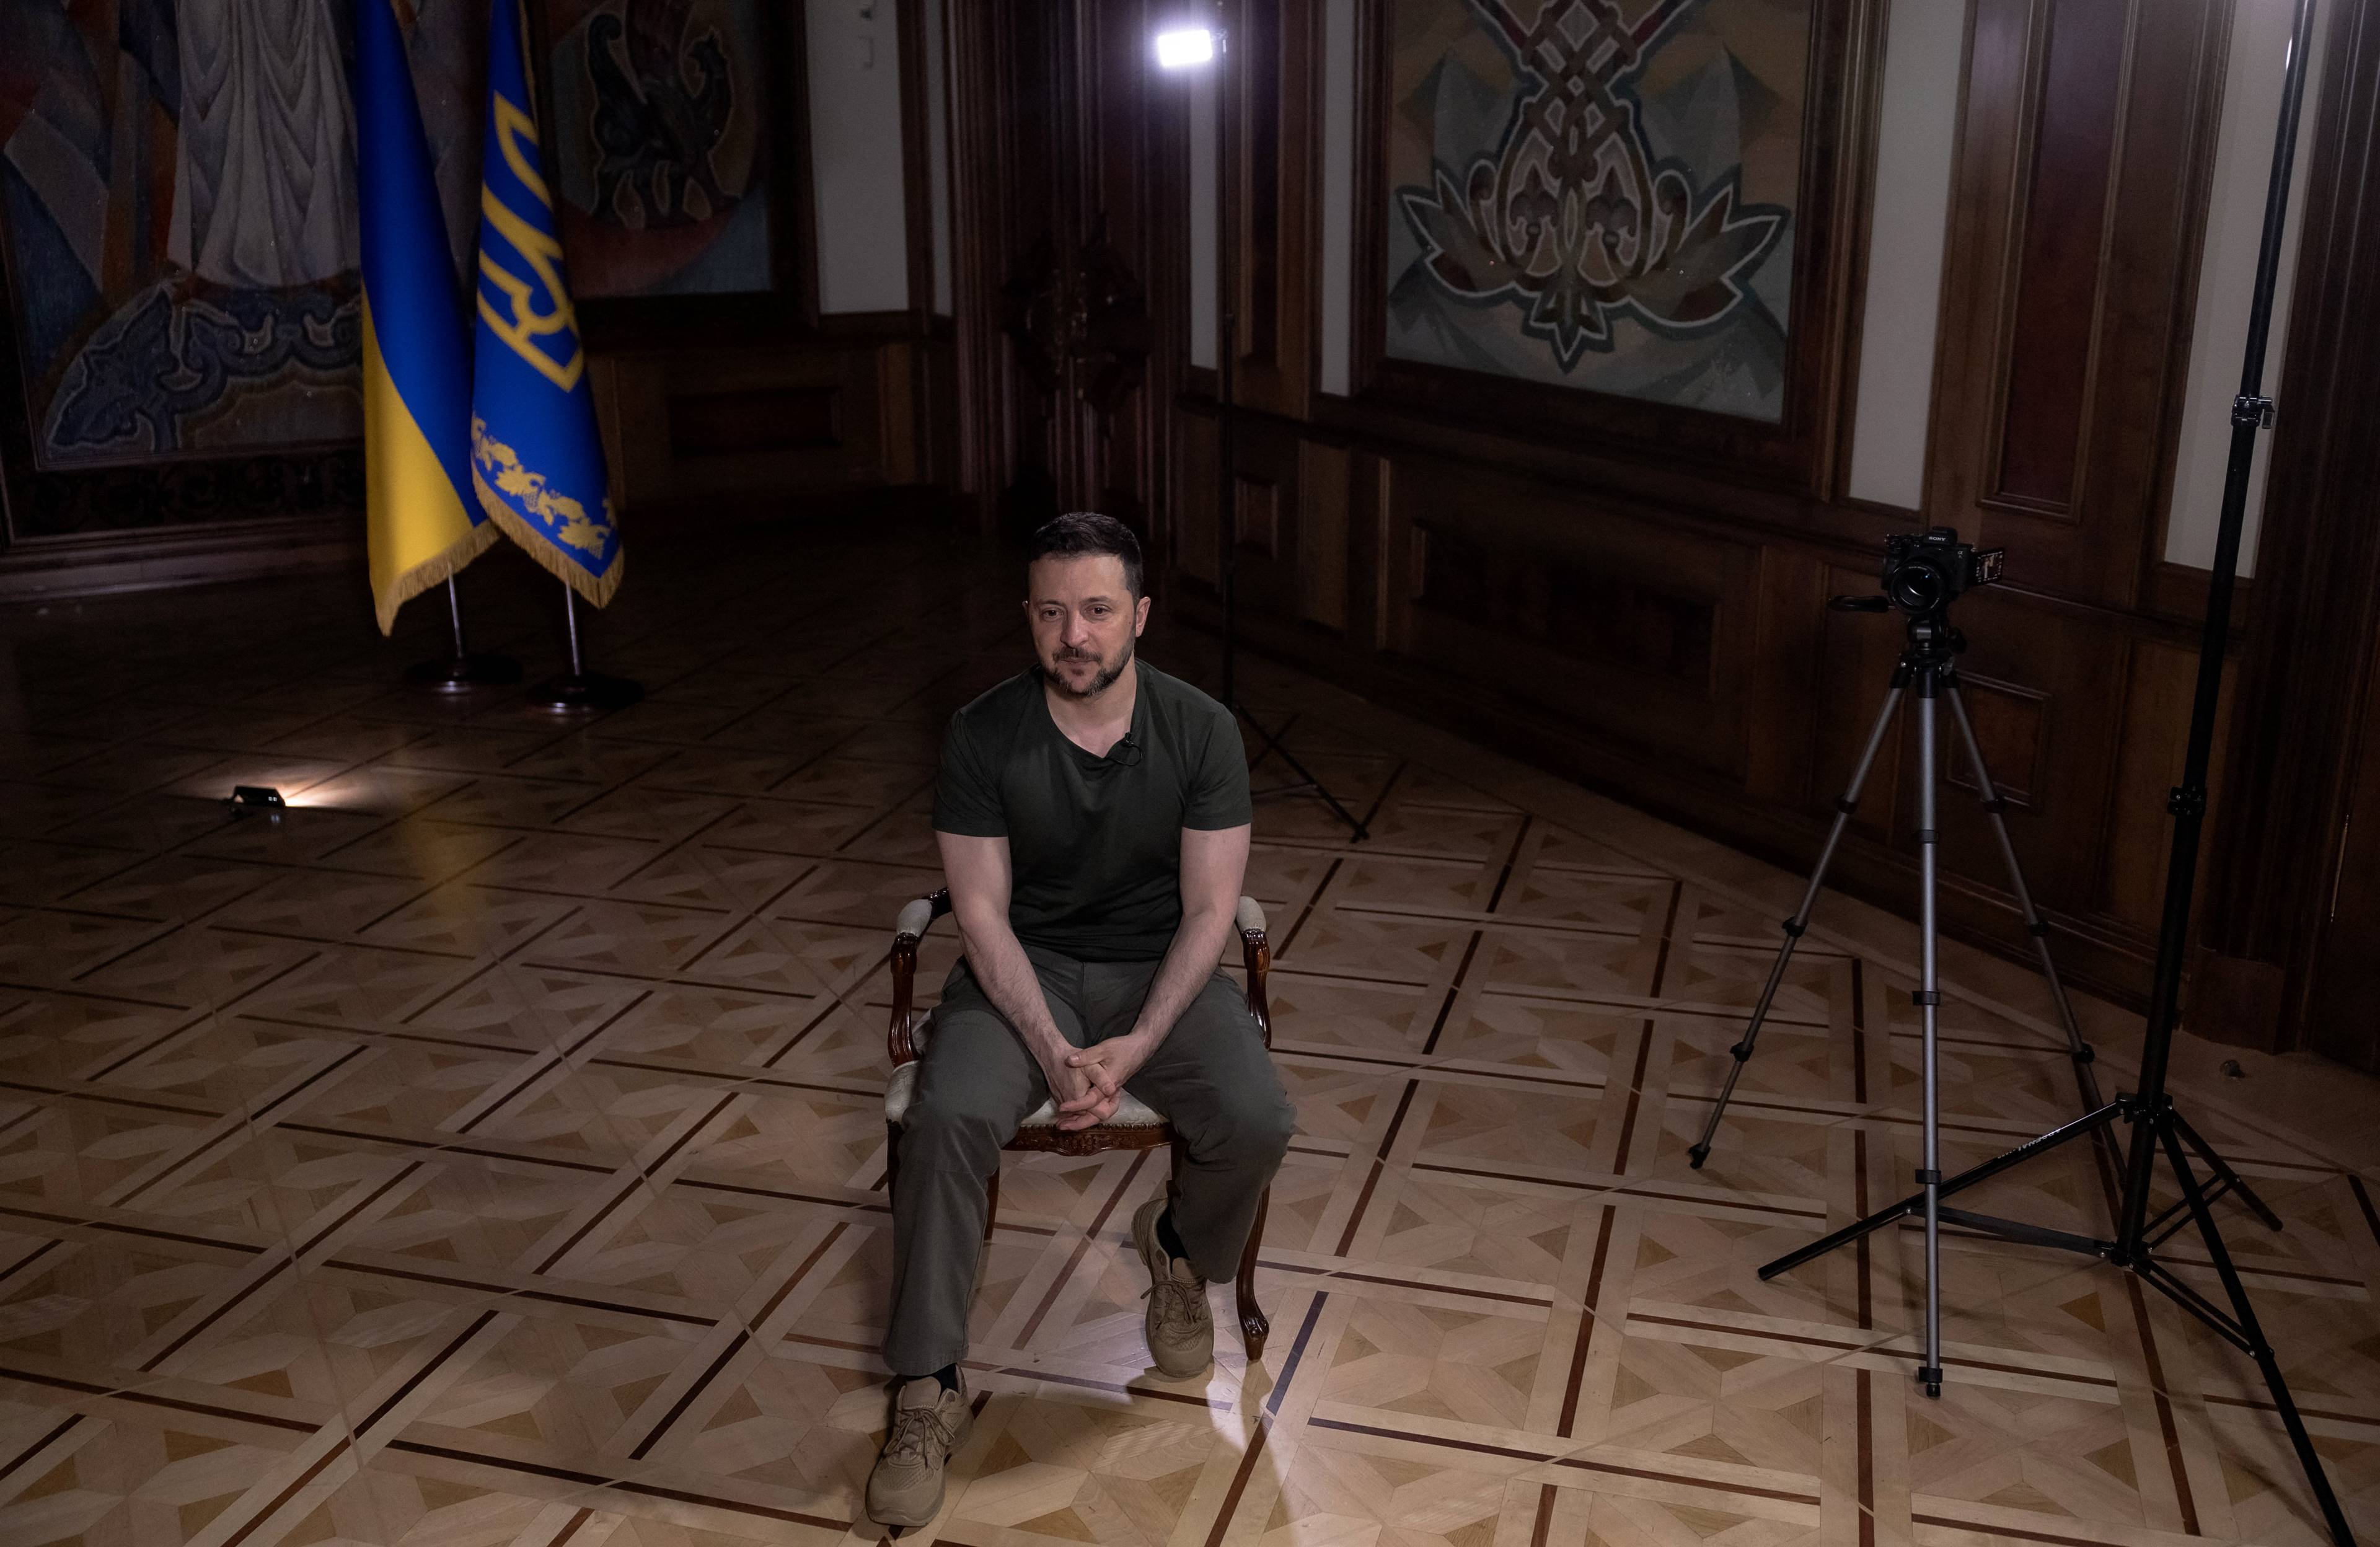 Prezydent Zełenski siedzi na krześle w pustym pokoju